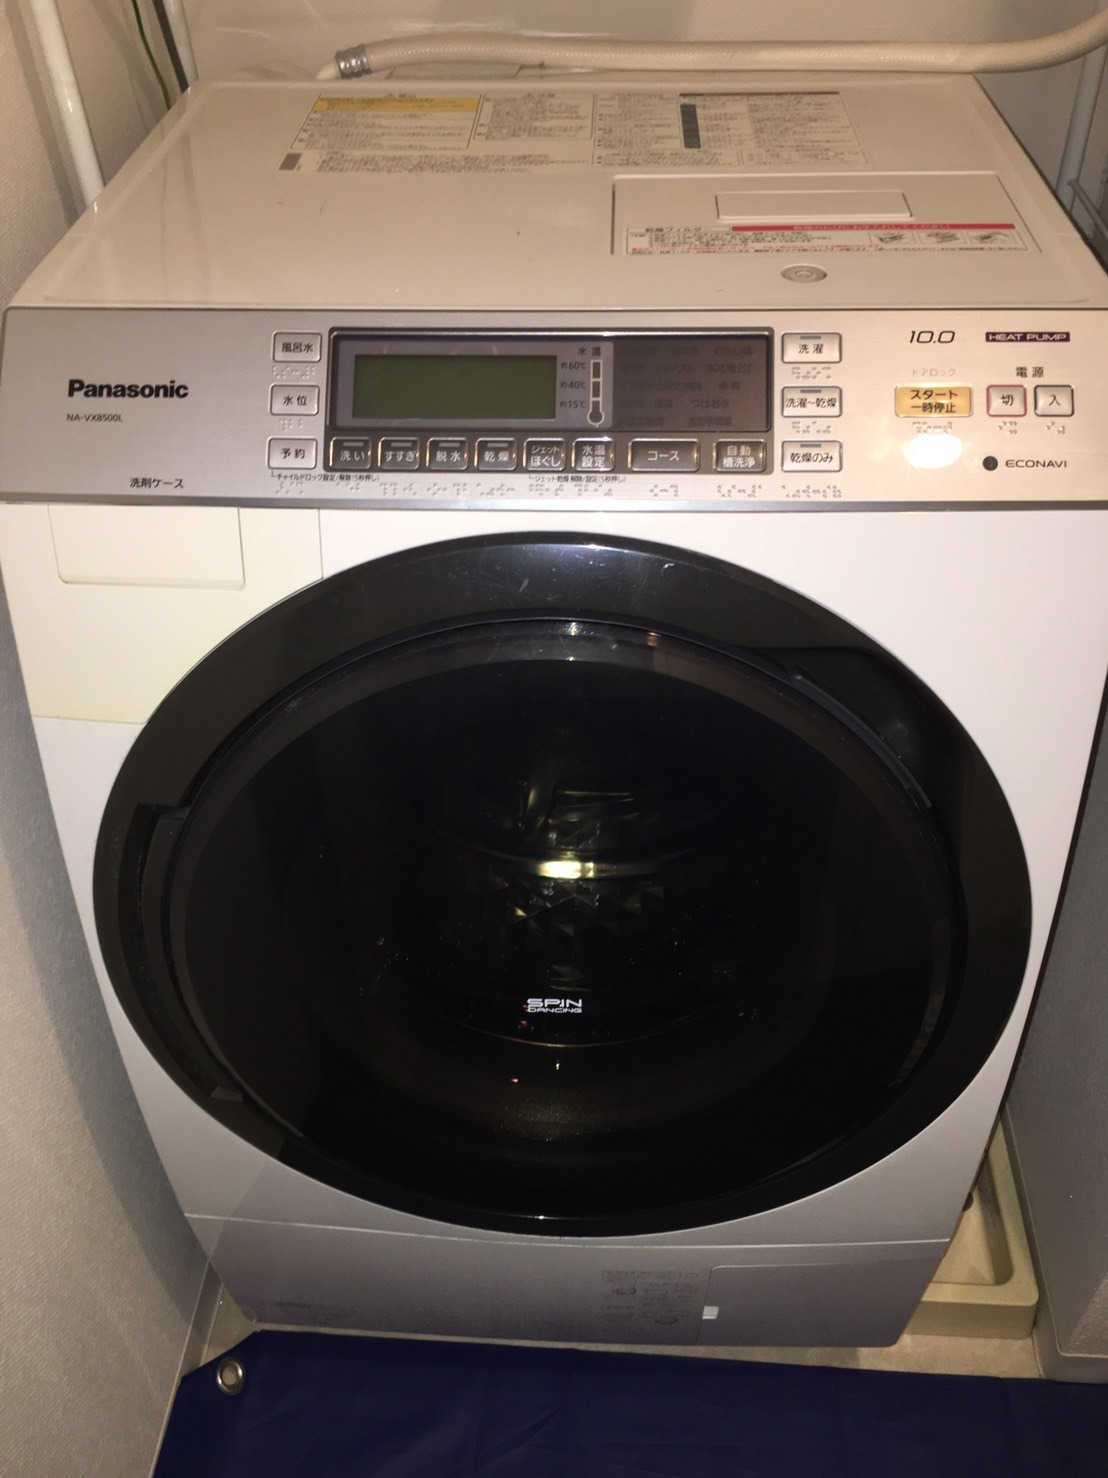 ドラム式洗濯機 パナソニック NA-VX8500L - 洗濯機